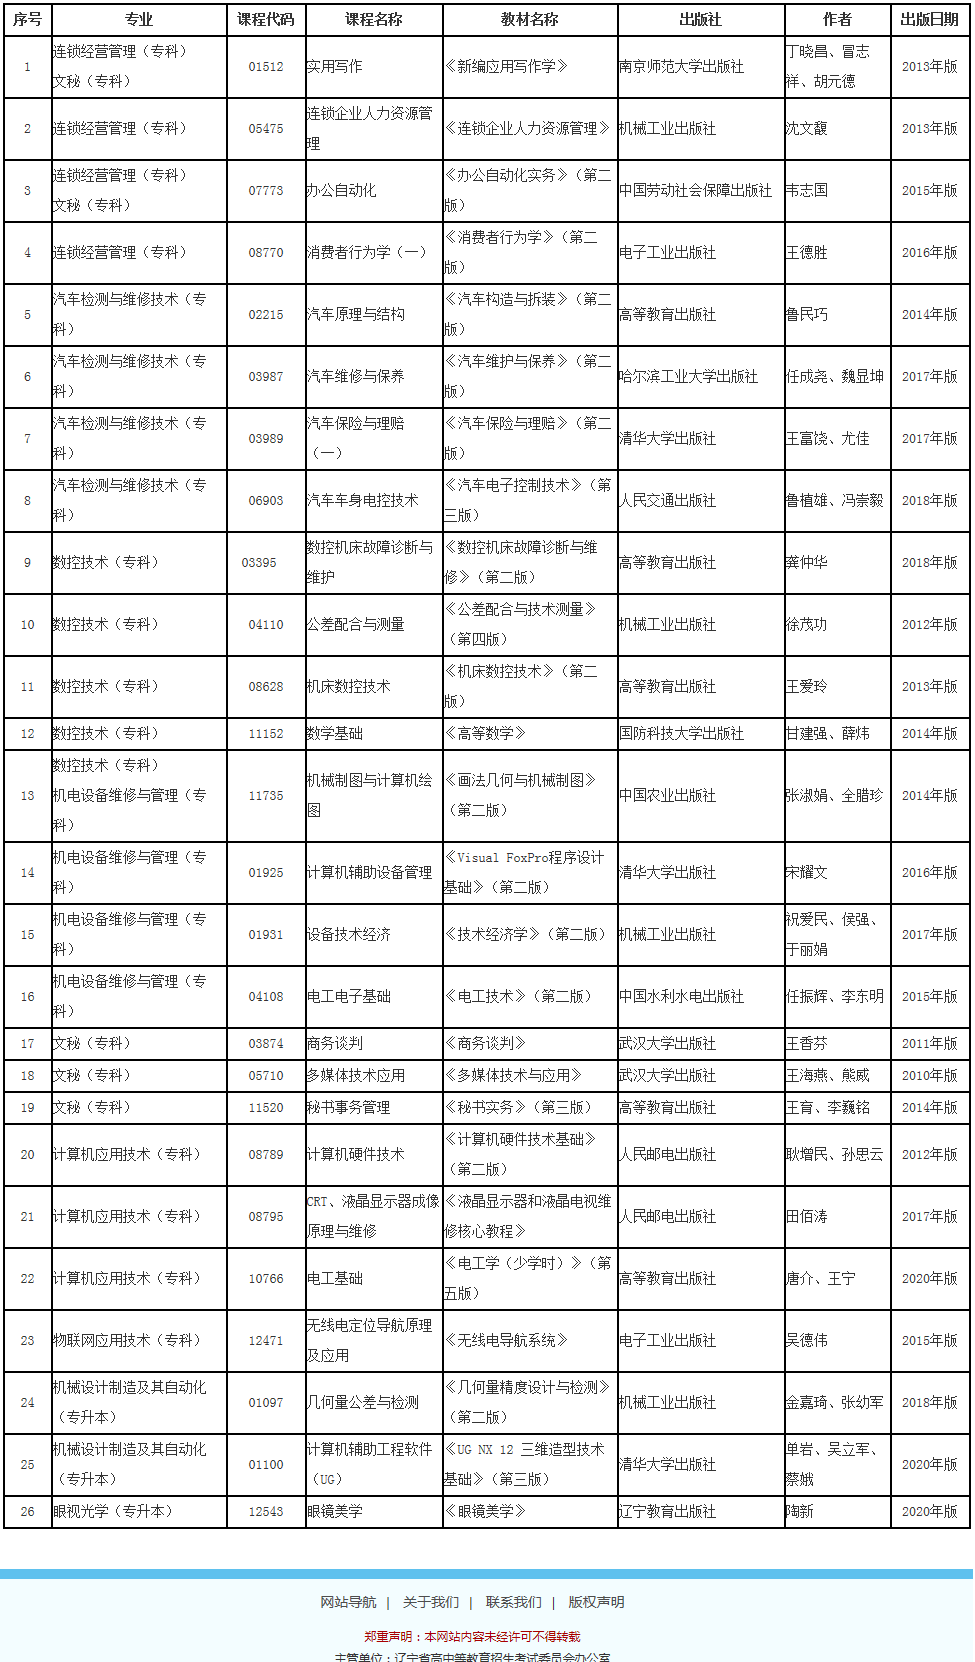 辽宁省高等教育自学考试2021年上半年考试调整使用教材一览表